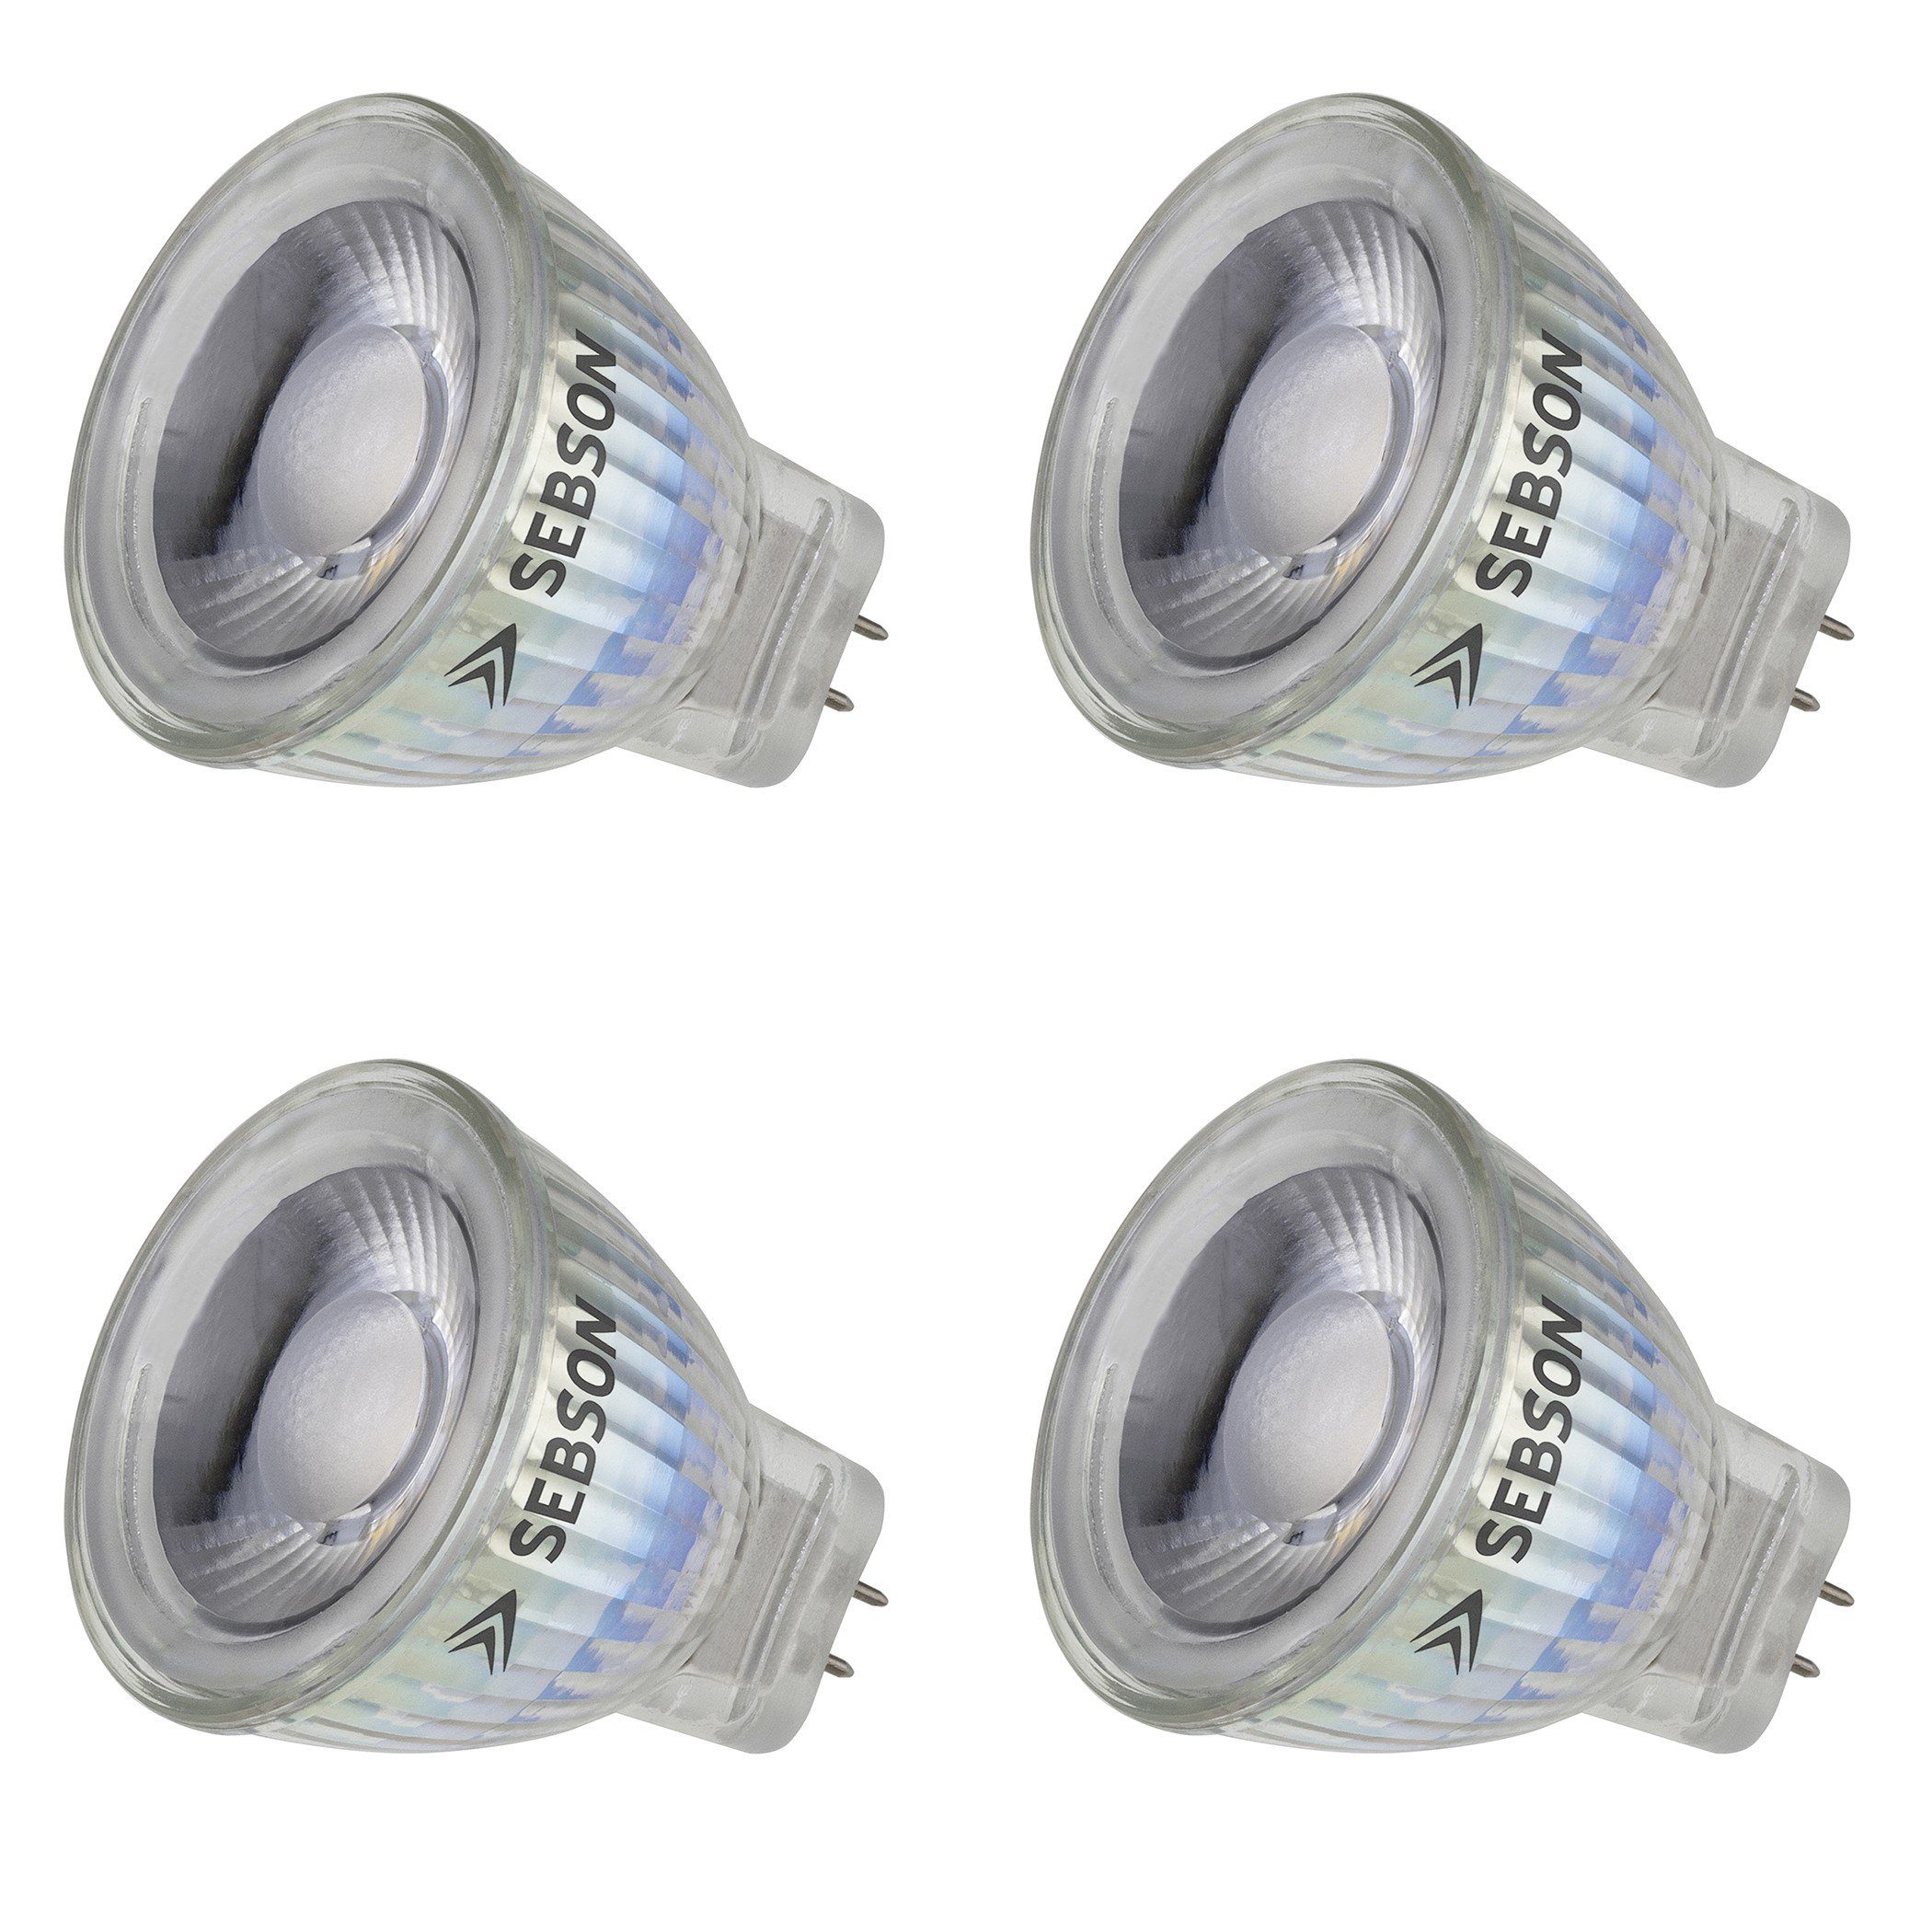 SEBSON LED Lampe GU4/ MR11 warmweiß 3W 220 Lumen, LED Spotlight 36°, 12V  DC, ø35x40mm, 4er Pack LED-Leuchtmittel